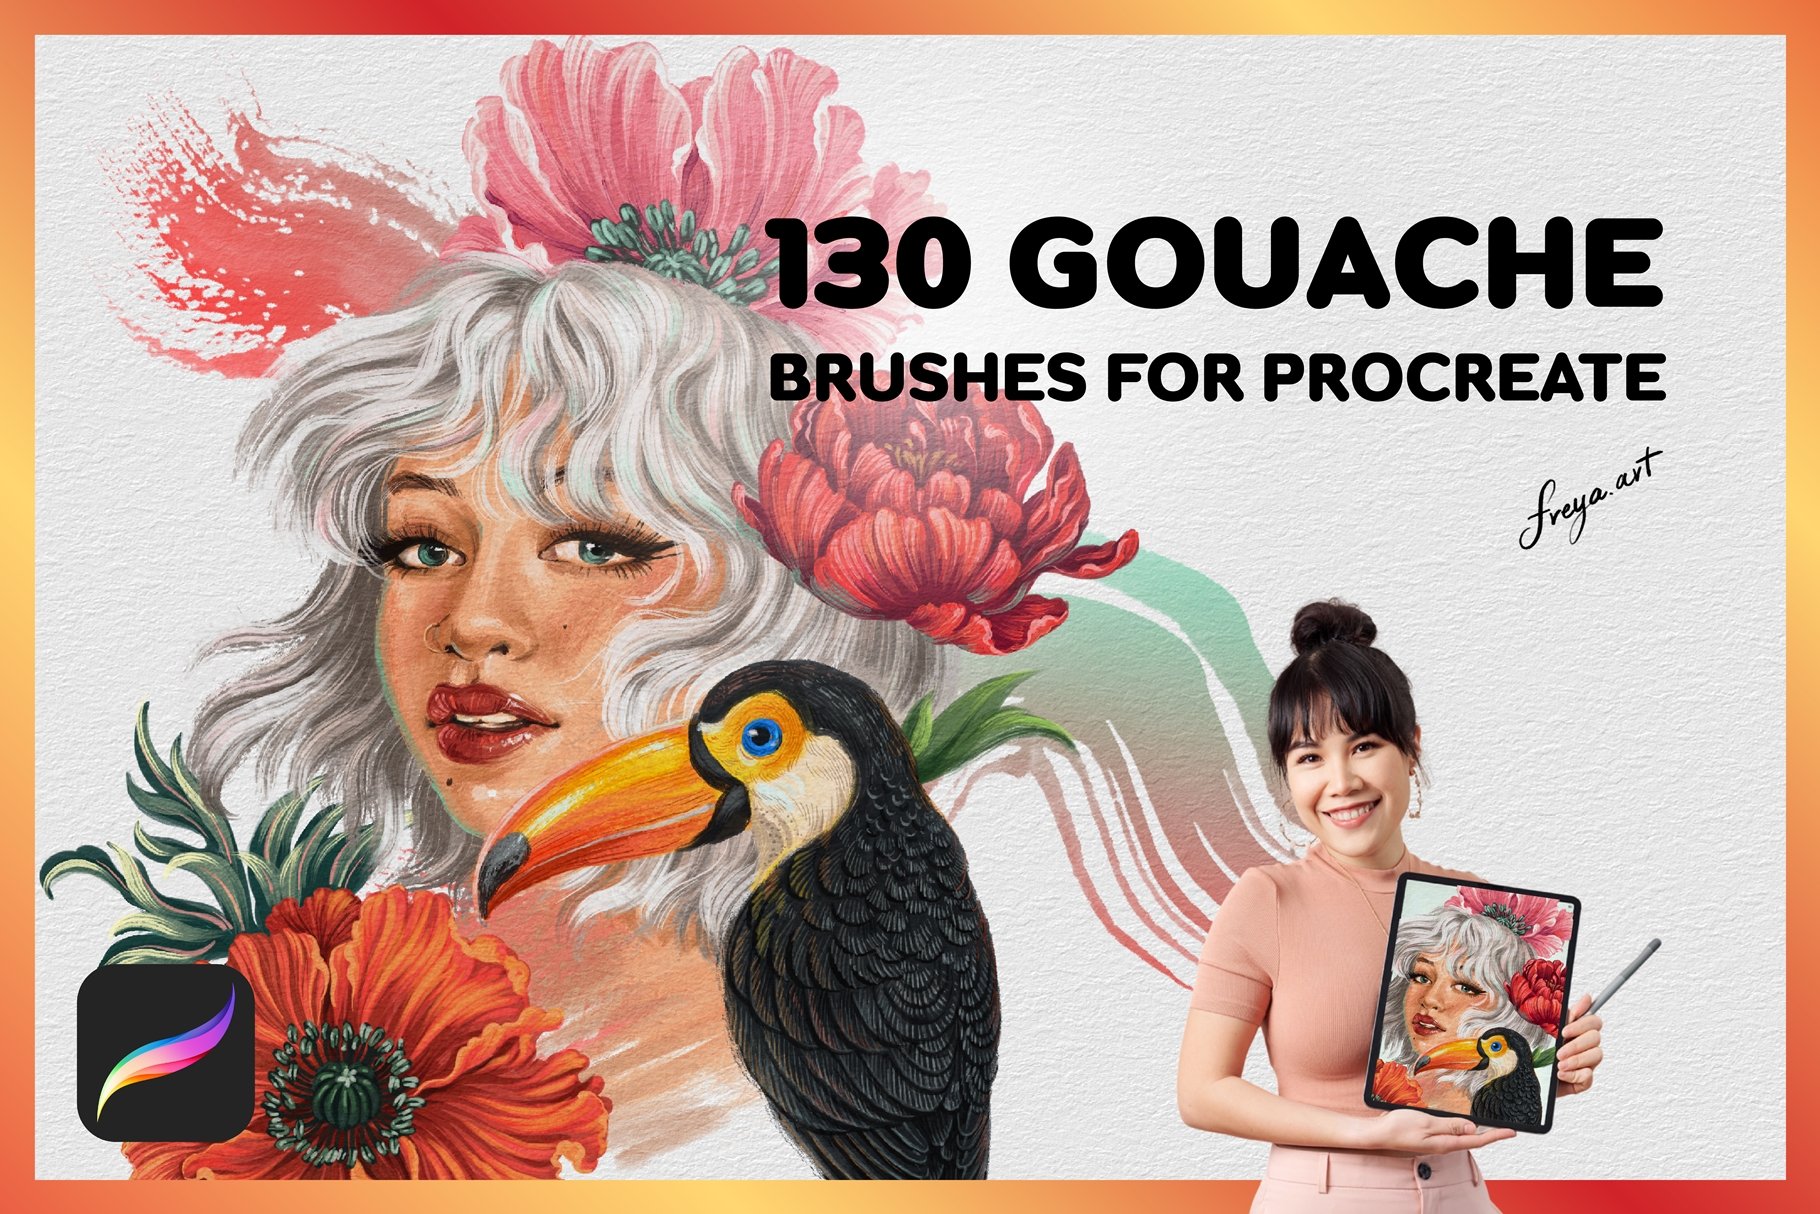 Gouache Brushes For Procreate - Inspire Uplift